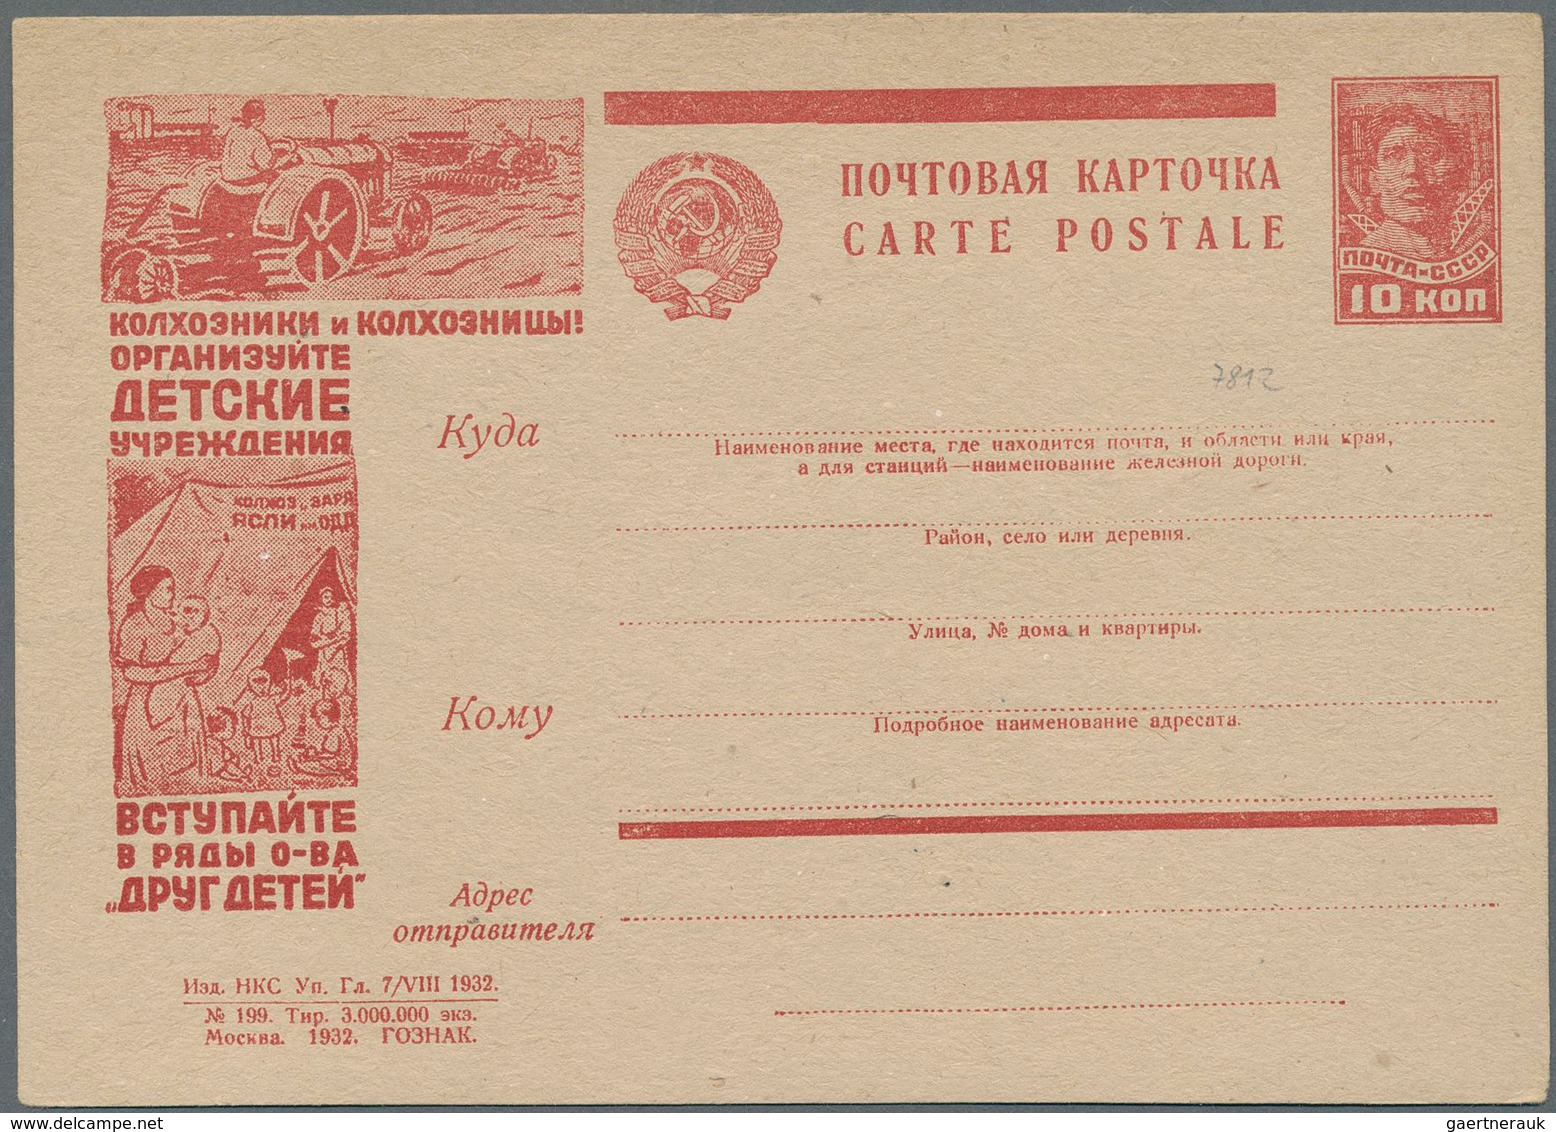 Russland / Sowjetunion / GUS / Nachfolgestaaaten: 1931/32, 18 Clean Unused Picture Postcards All Wit - Sammlungen